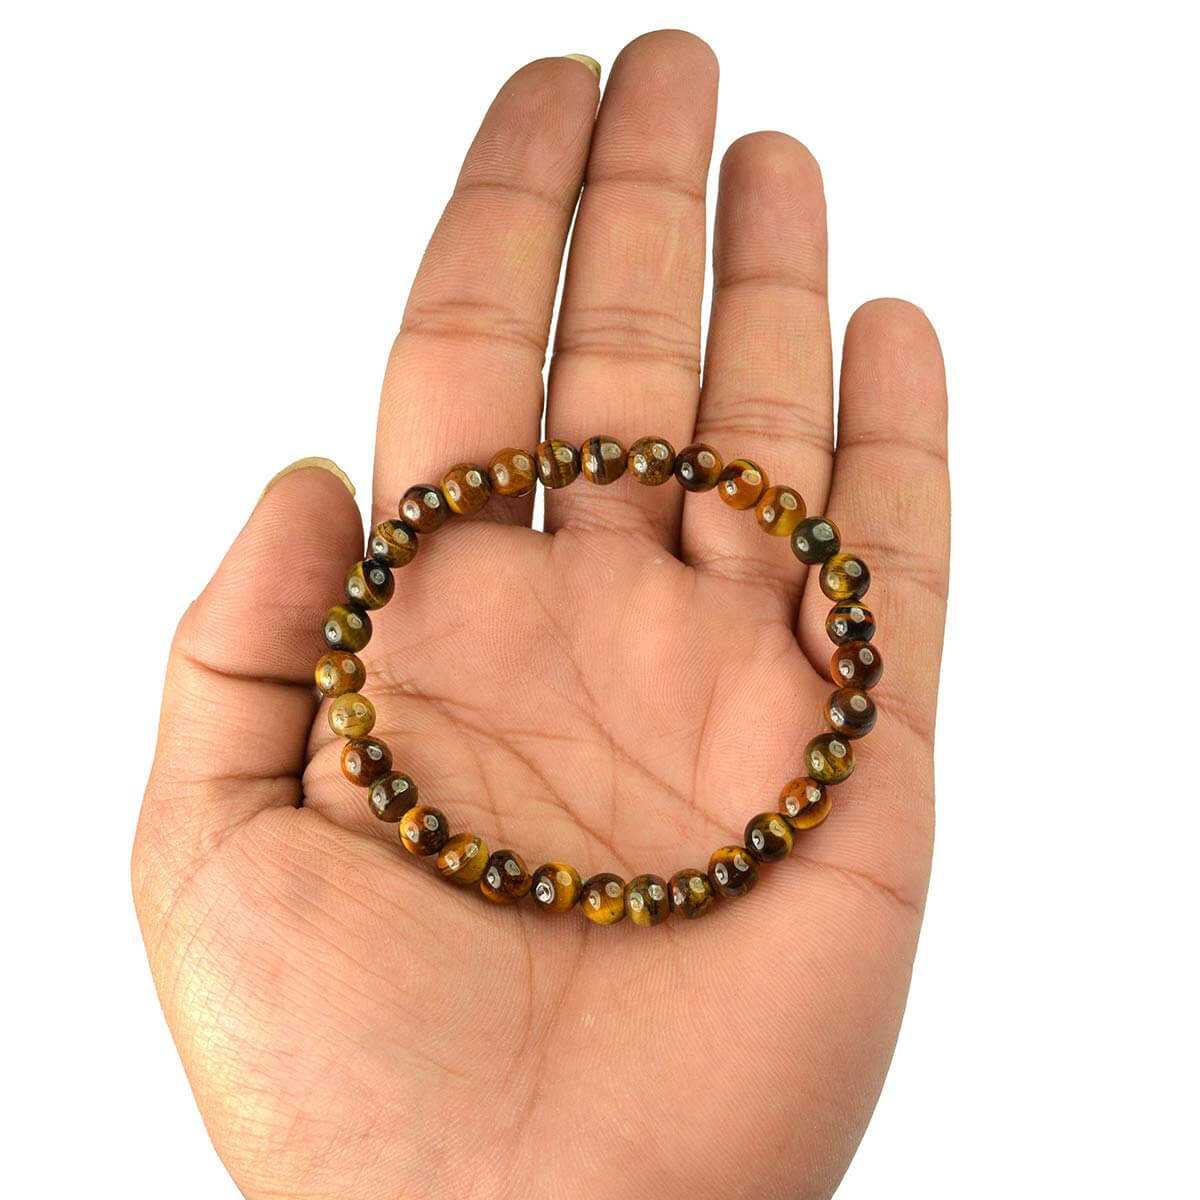 Tiger Eye Crystal Bracelet for Reiki Healing 6 MM